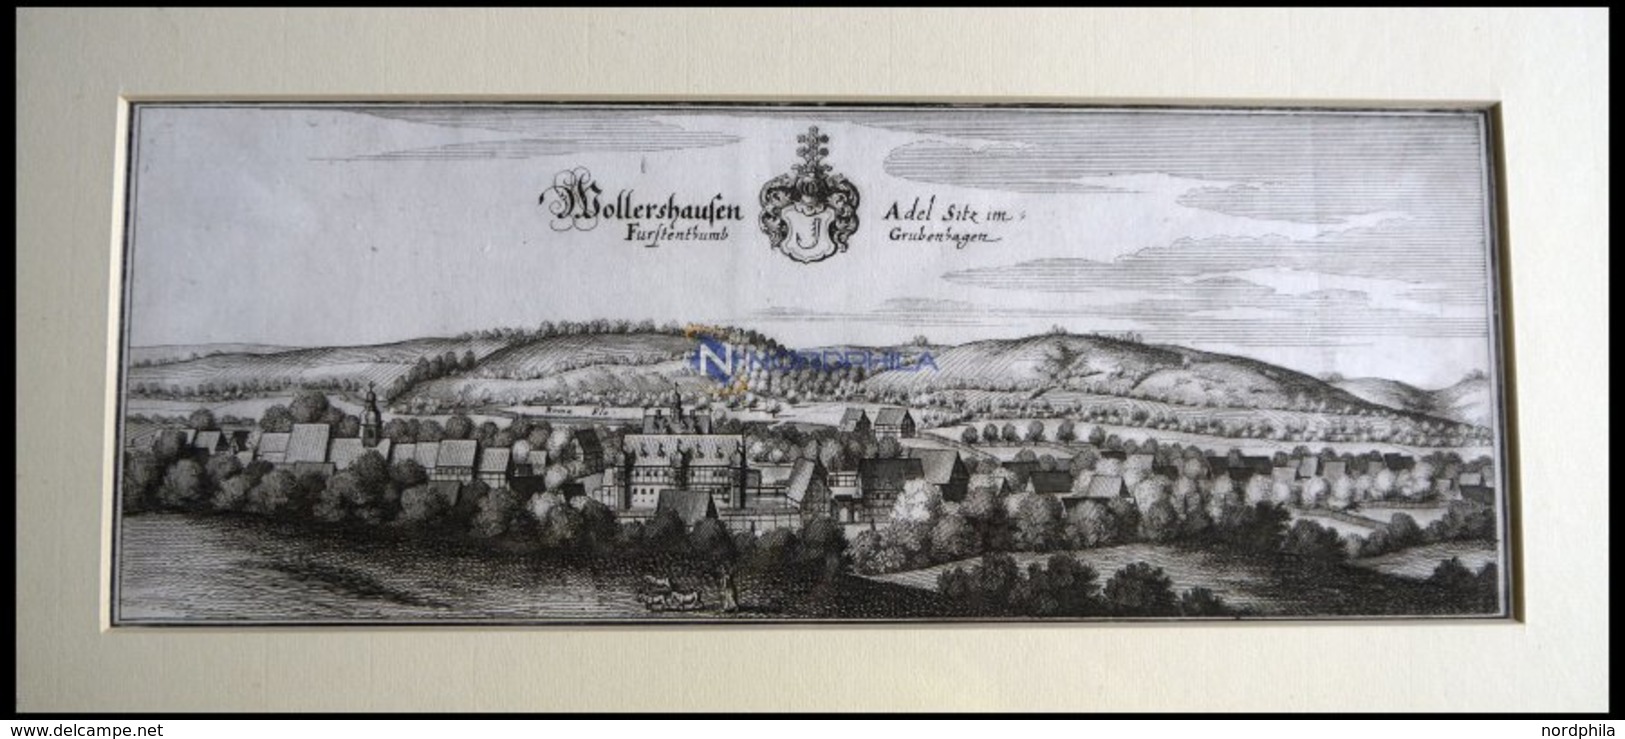 WOLLERSHAUSEN, Gesamtansicht, Kupferstich Von Merian Um 1645 - Litografía